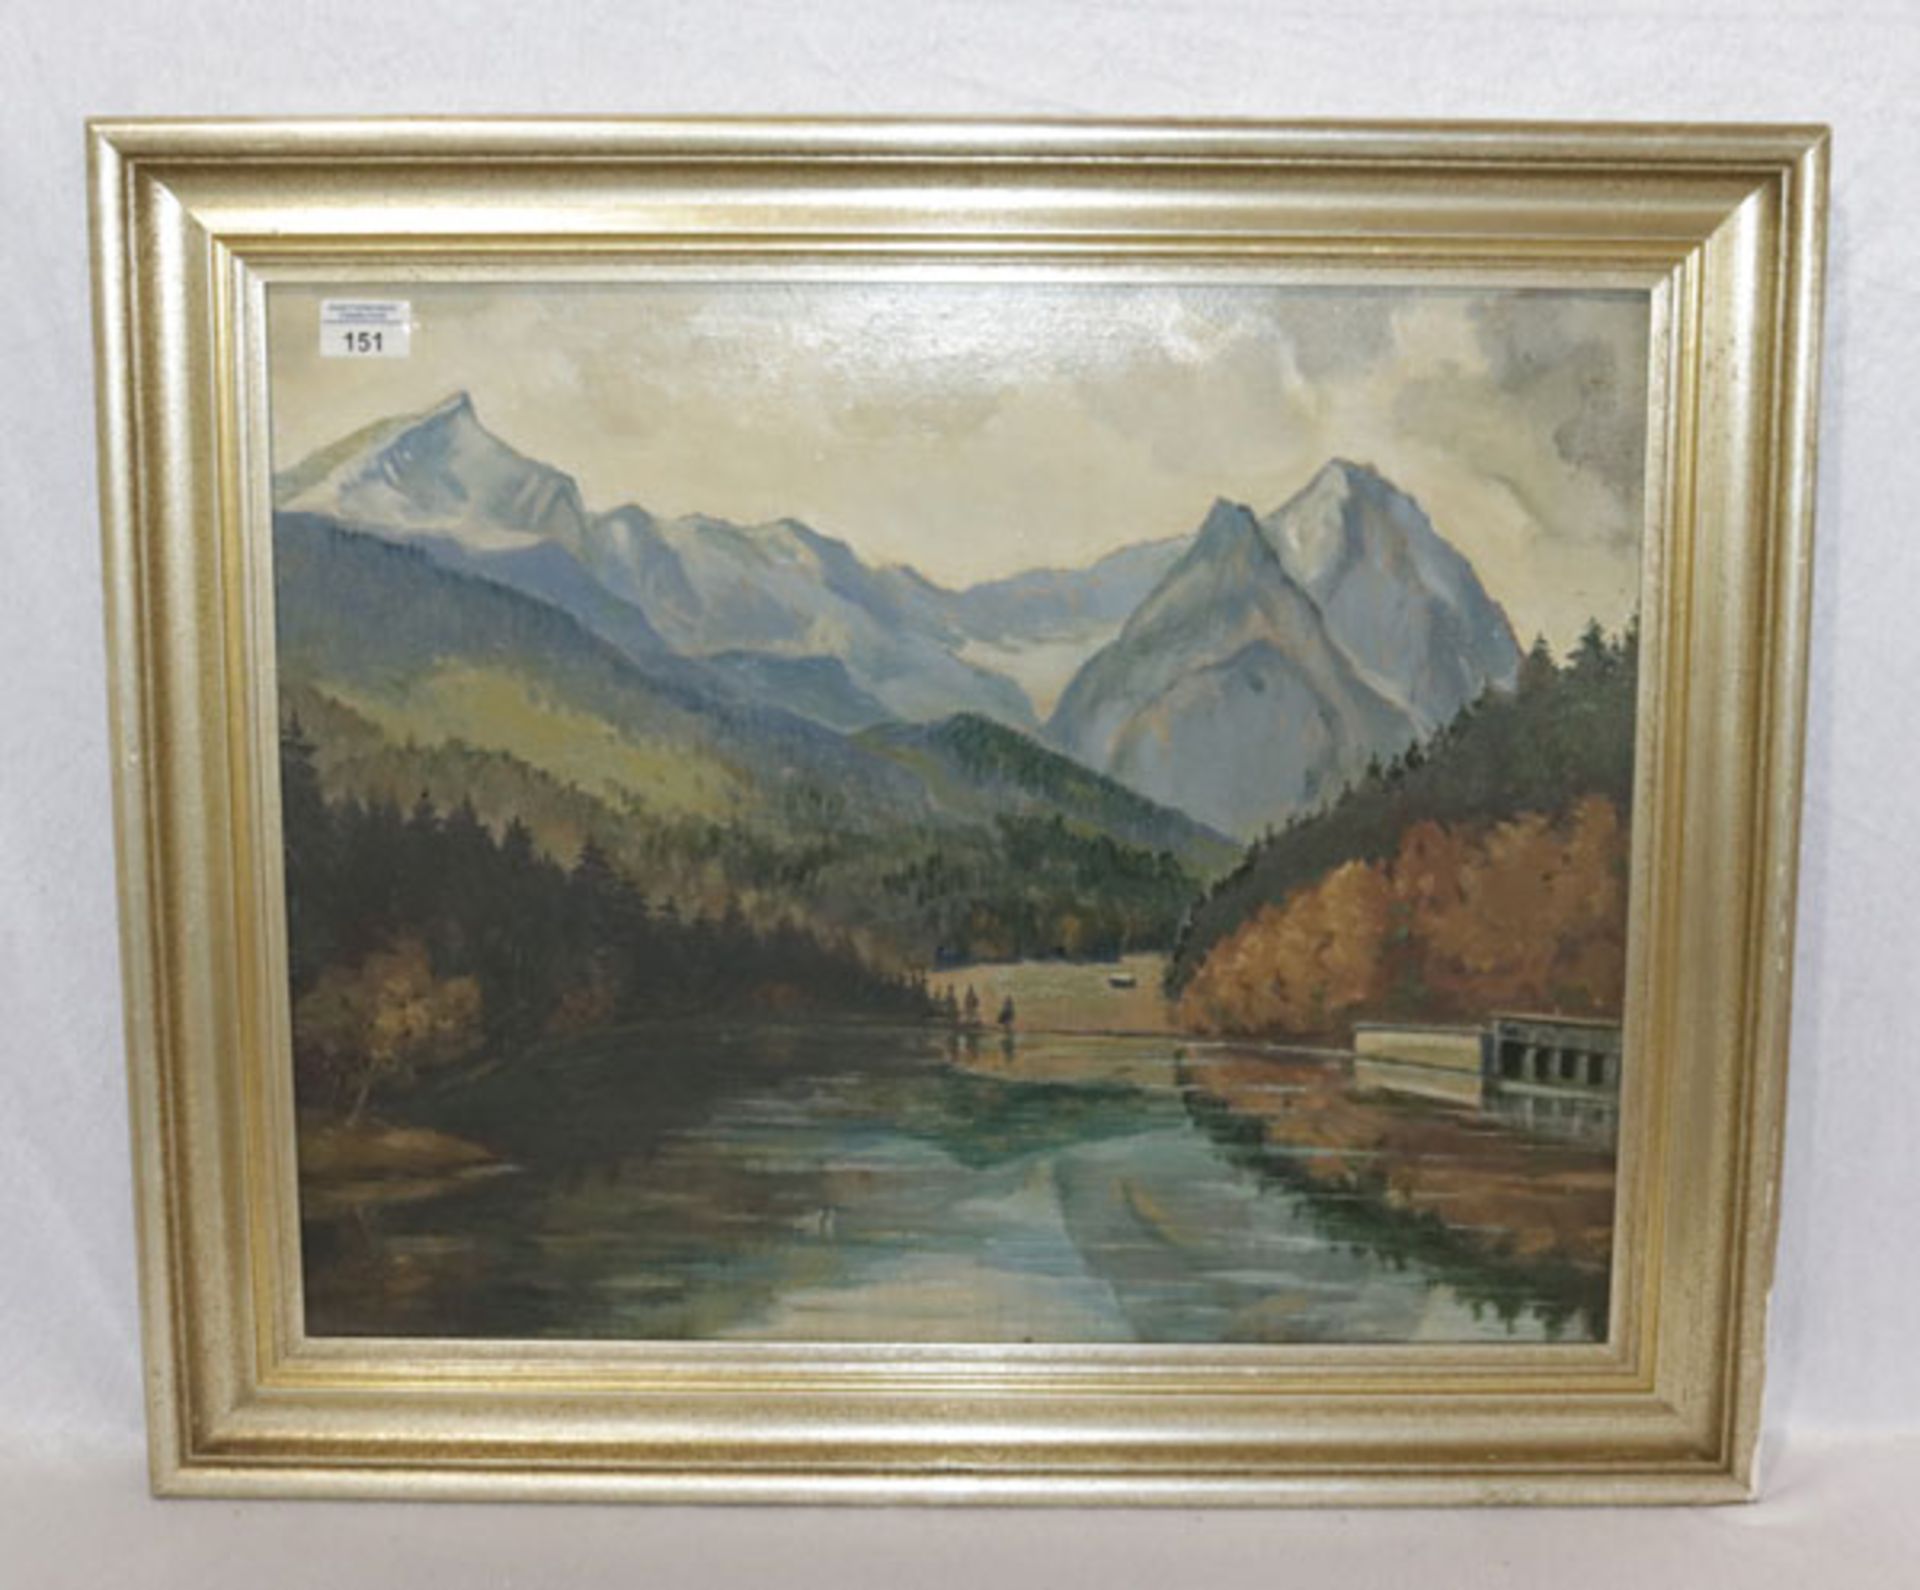 Gemälde ÖL/Malkarton 'Riessersee mit Wettersteingebirge', signiert Hans Horn, gerahmt, Rahmen